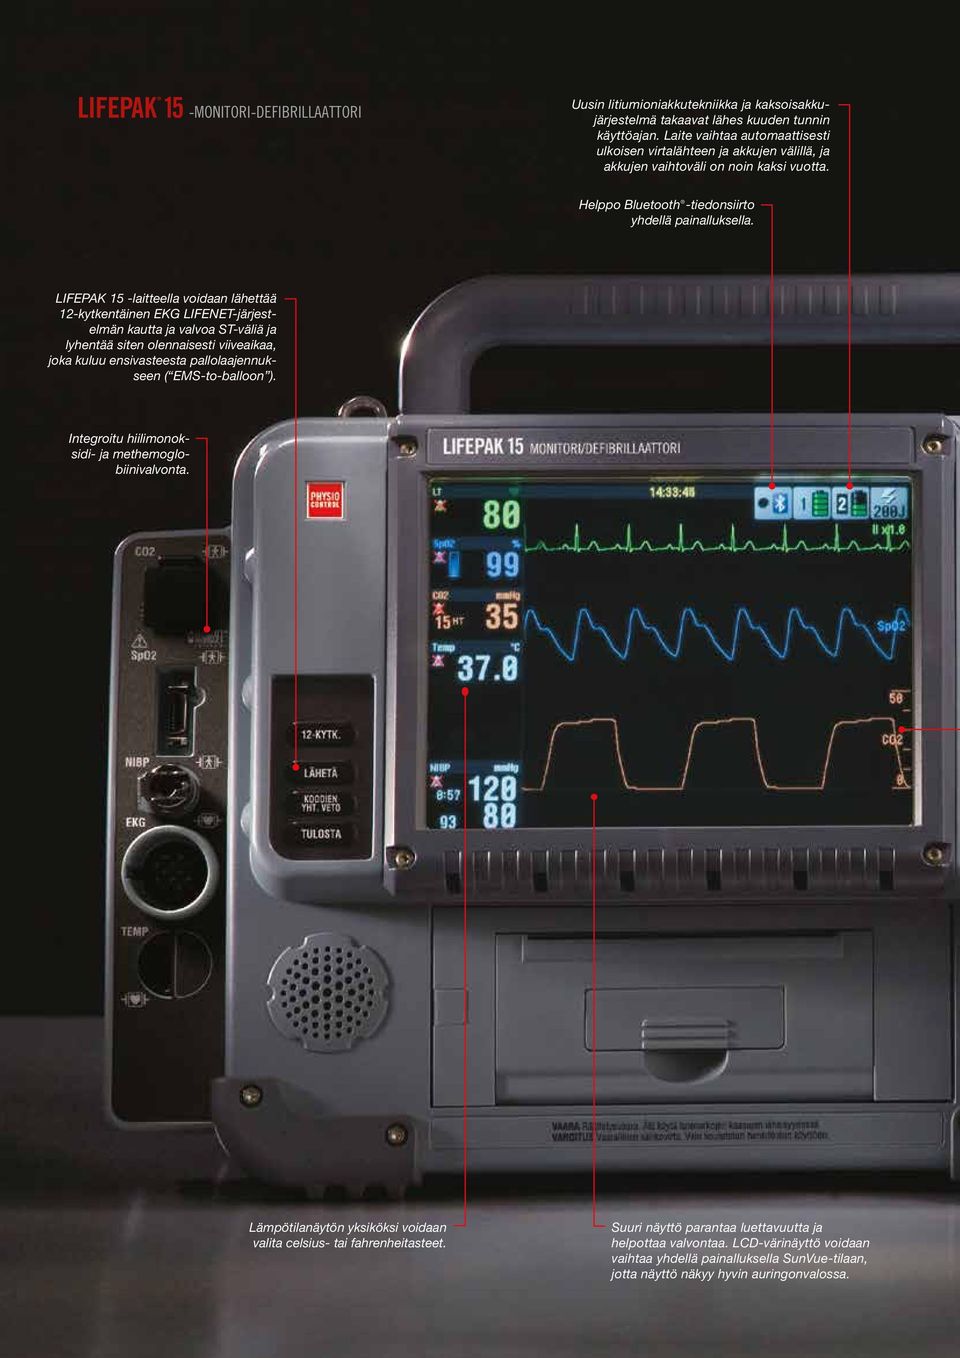 LIFEPAK 15 -laitteella voidaan lähettää 12-kytkentäinen EKG LIFENET-järjestelmän kautta ja valvoa ST-väliä ja lyhentää siten olennaisesti viiveaikaa, joka kuluu ensivasteesta pallolaajennukseen (